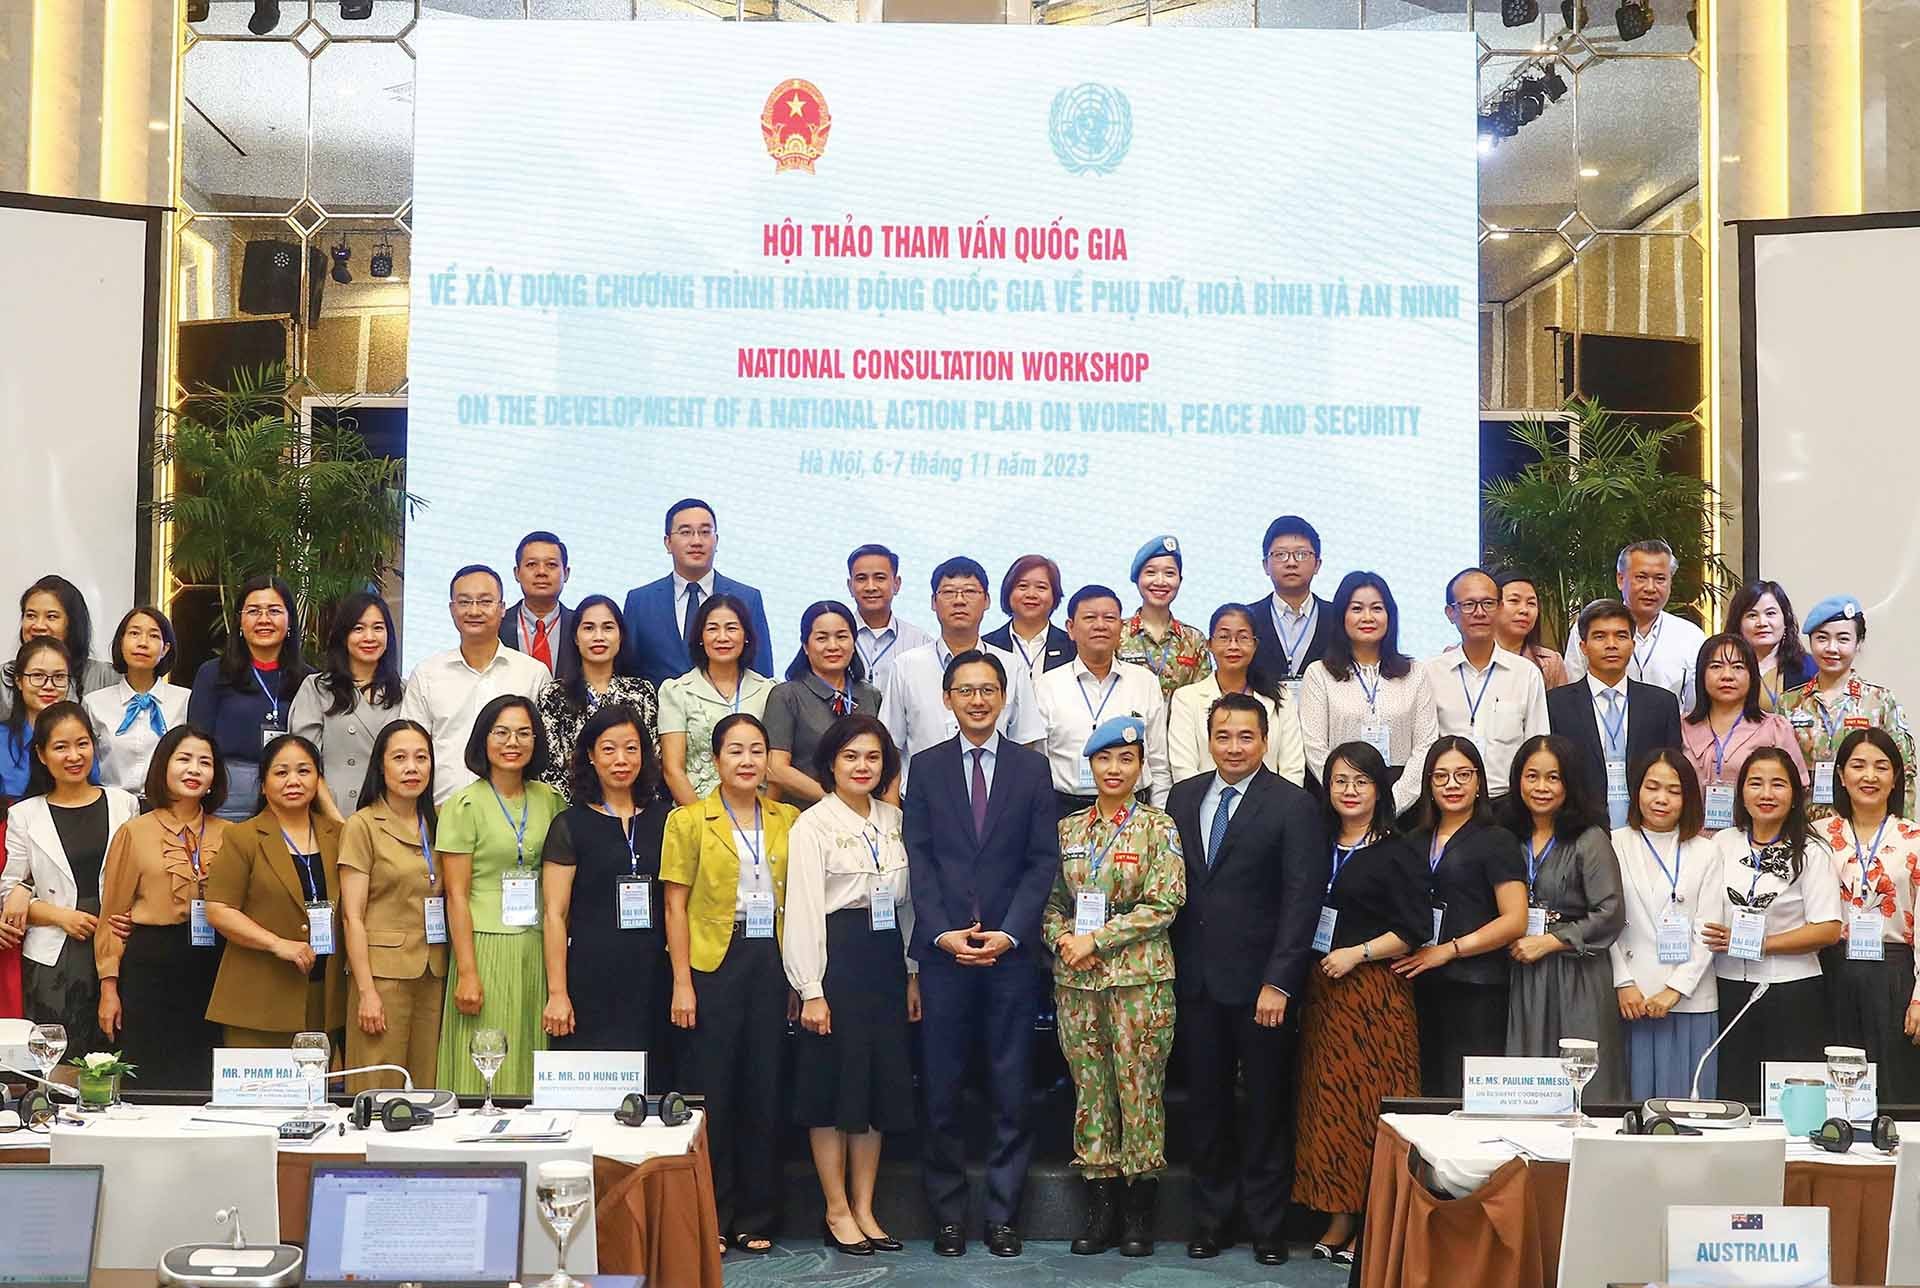 El Ministerio de Relaciones Exteriores y ONU Mujeres organizaron conjuntamente un taller de consulta nacional sobre el desarrollo de un plan de acción nacional sobre mujeres, paz y seguridad en Hanoi el 6 de noviembre de 11. (Fuente: ANV)